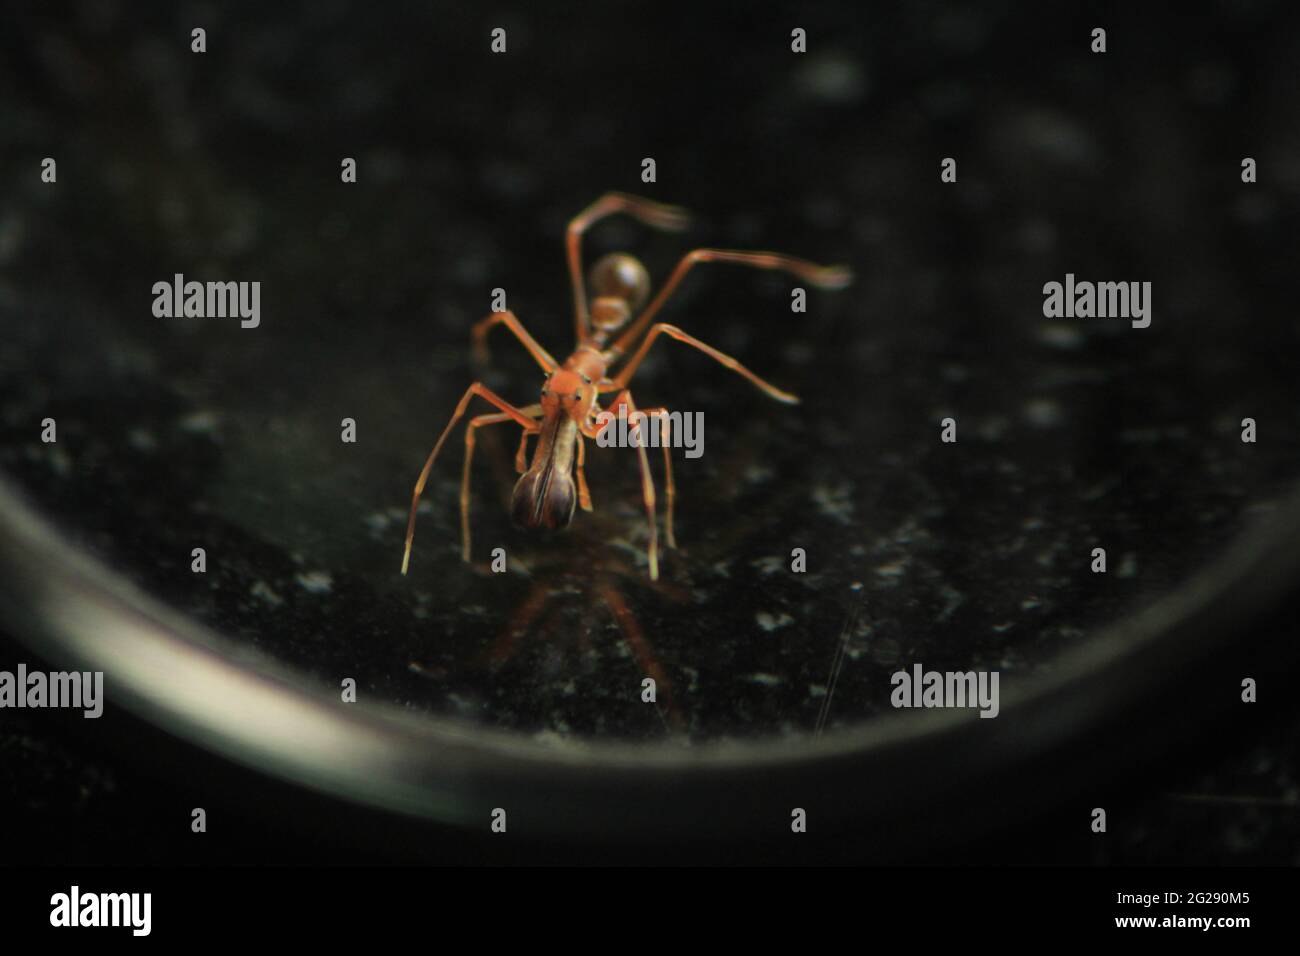 Araña Ant - Insectos - La araña evolucionó hacia formas similares a las hormigas para cohabitar en una colonia de hormigas y alimentarse de otras hormigas. Araña disfrazada. Foto de stock